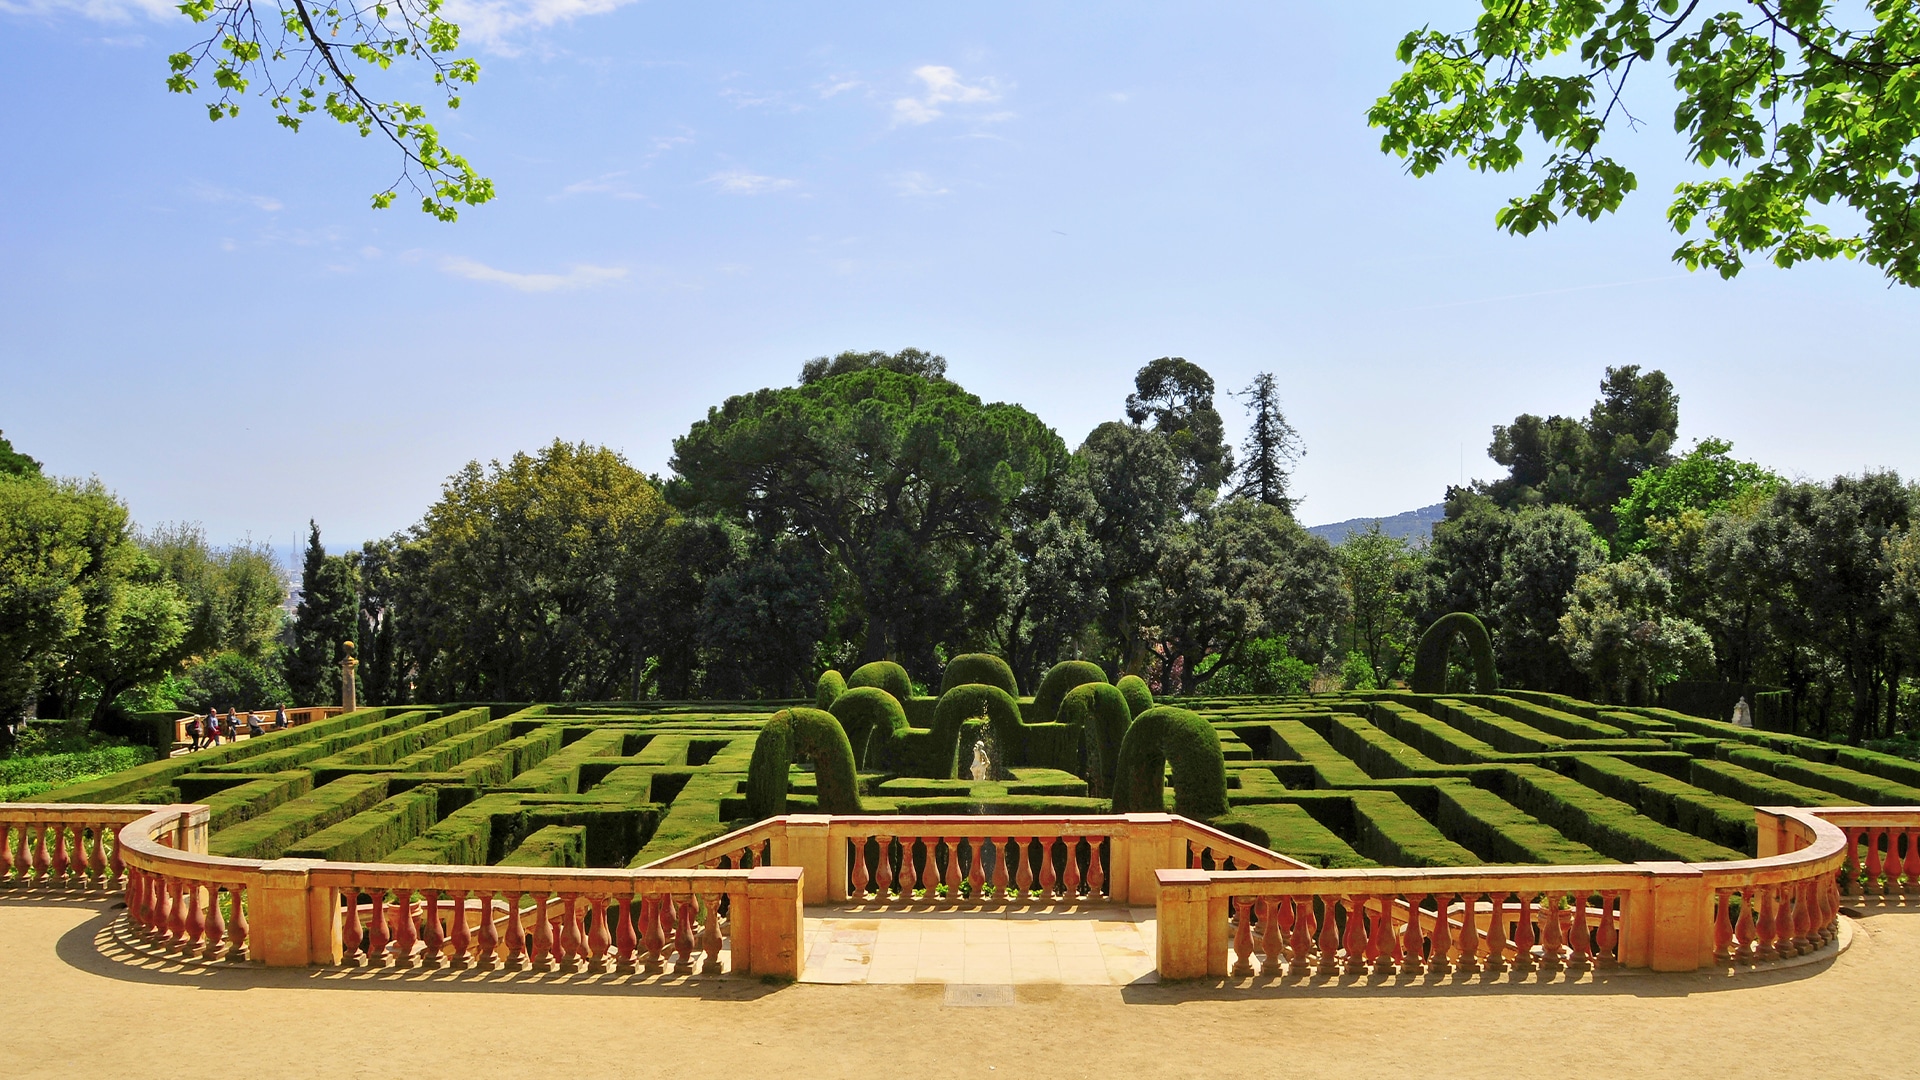 Vue générale du labyrinthe d’Horta à Barcelone